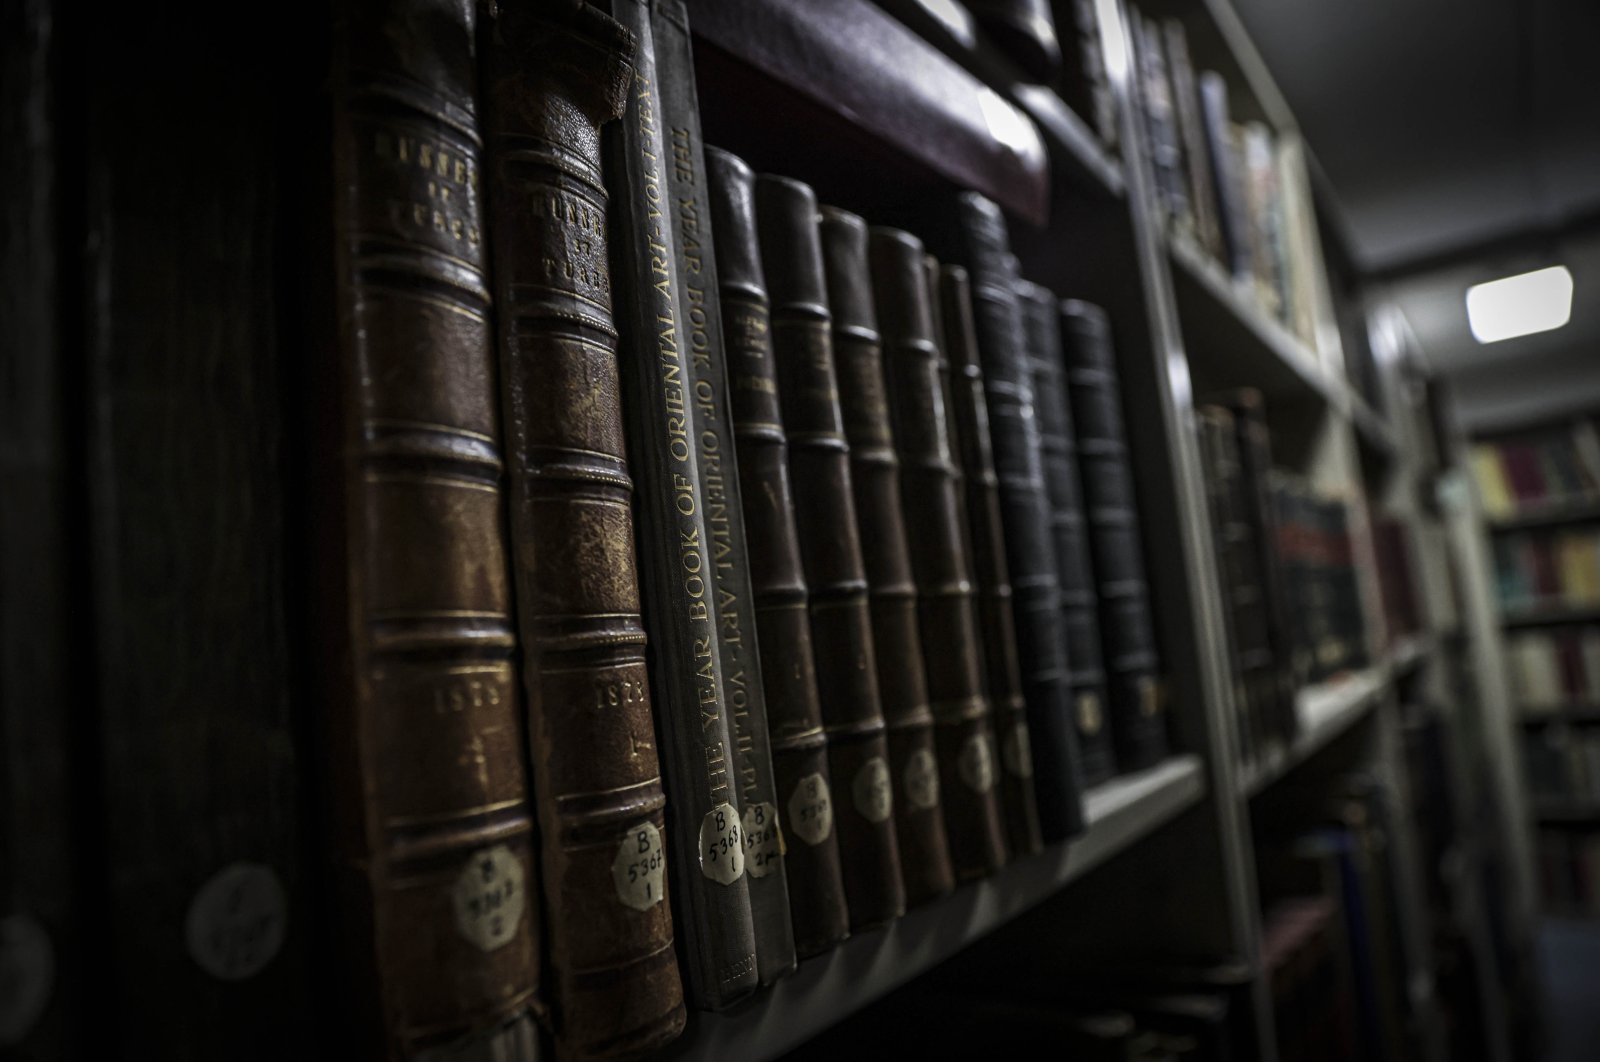 Perpustakaan TTK: Menyelam ke dalam sejarah dengan buku-buku berusia 5 abad